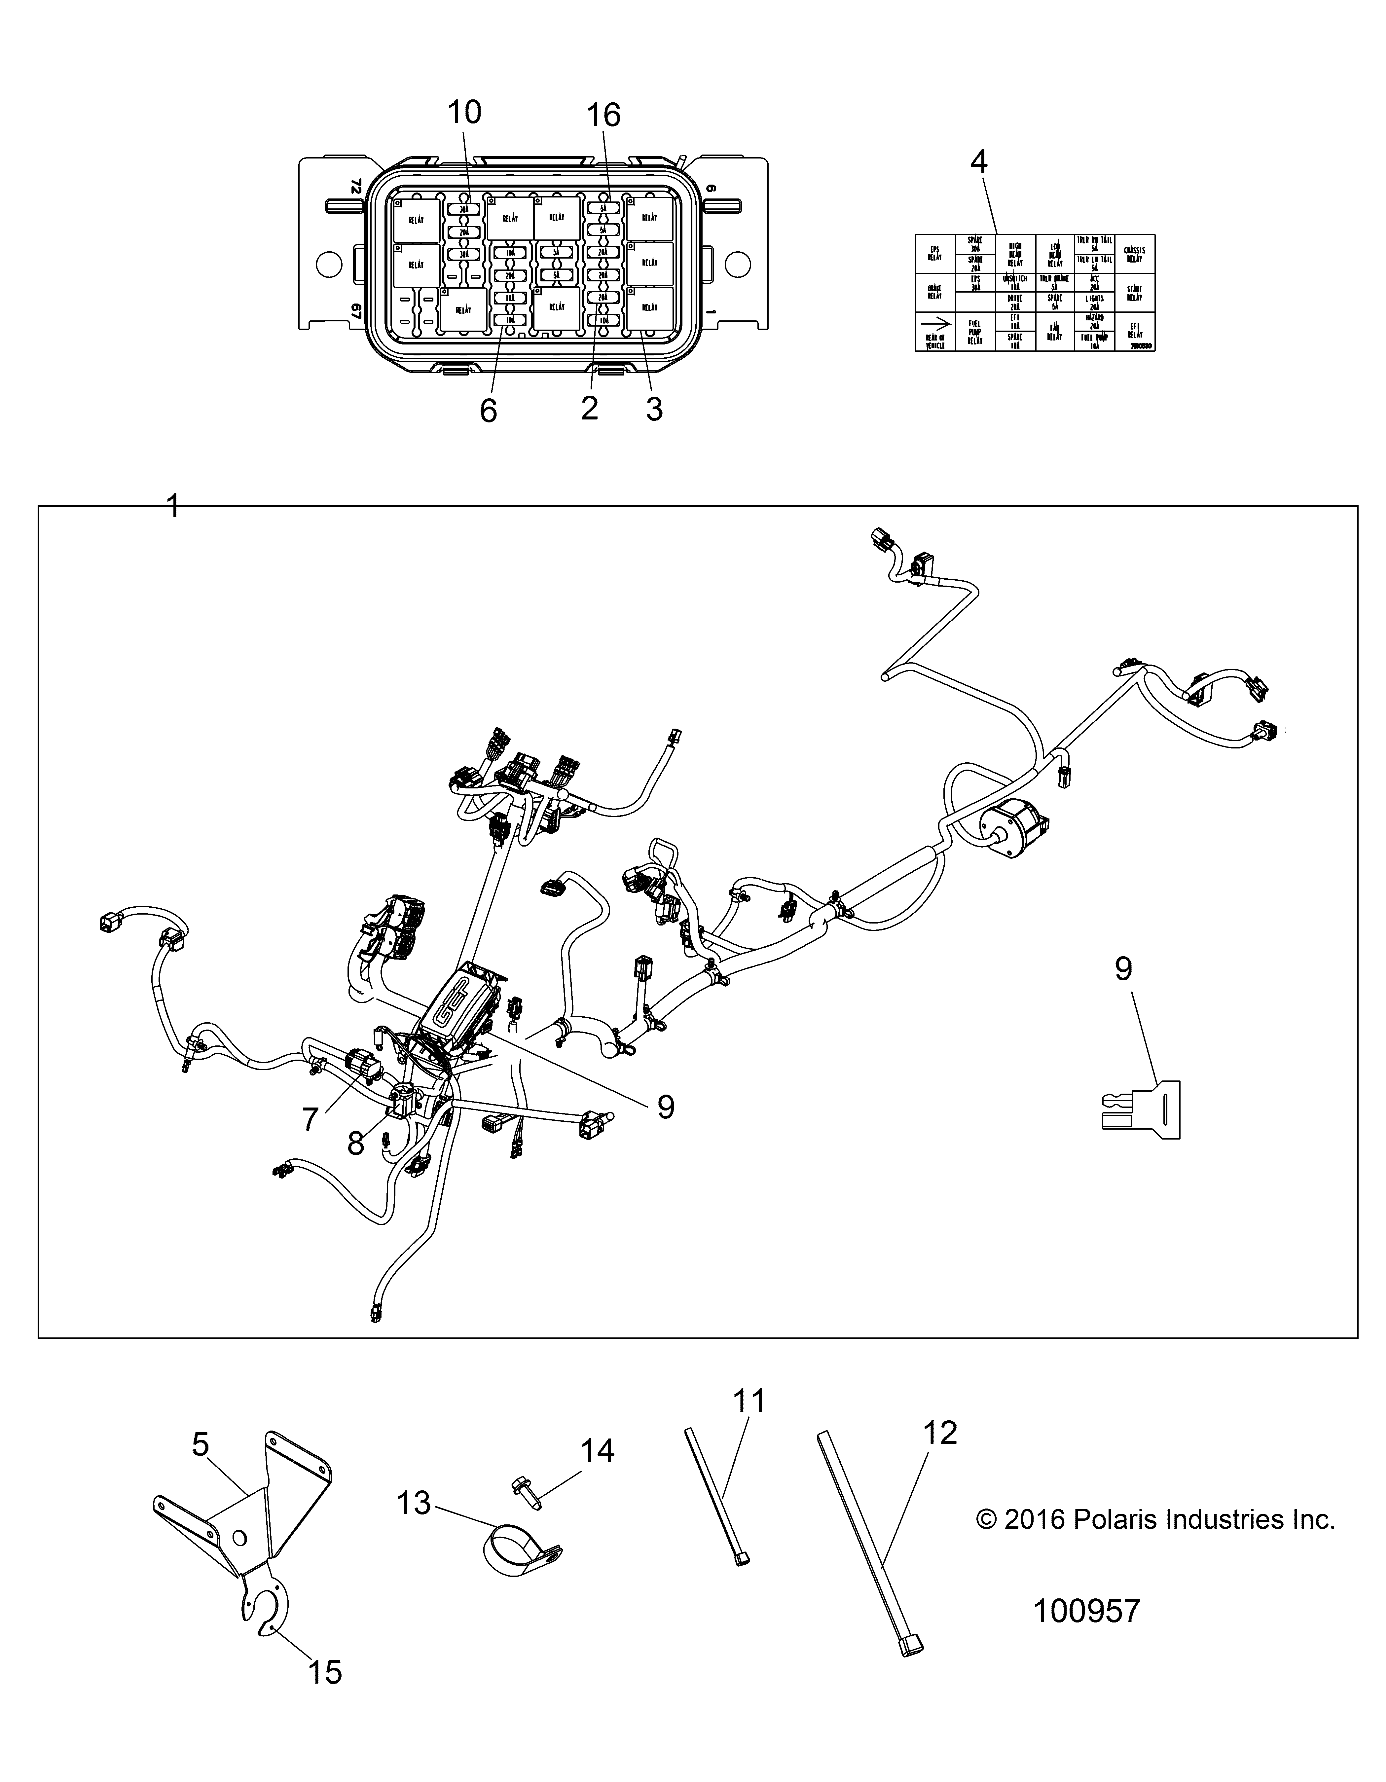 Foto diagrama Polaris que contem a peça 2413606